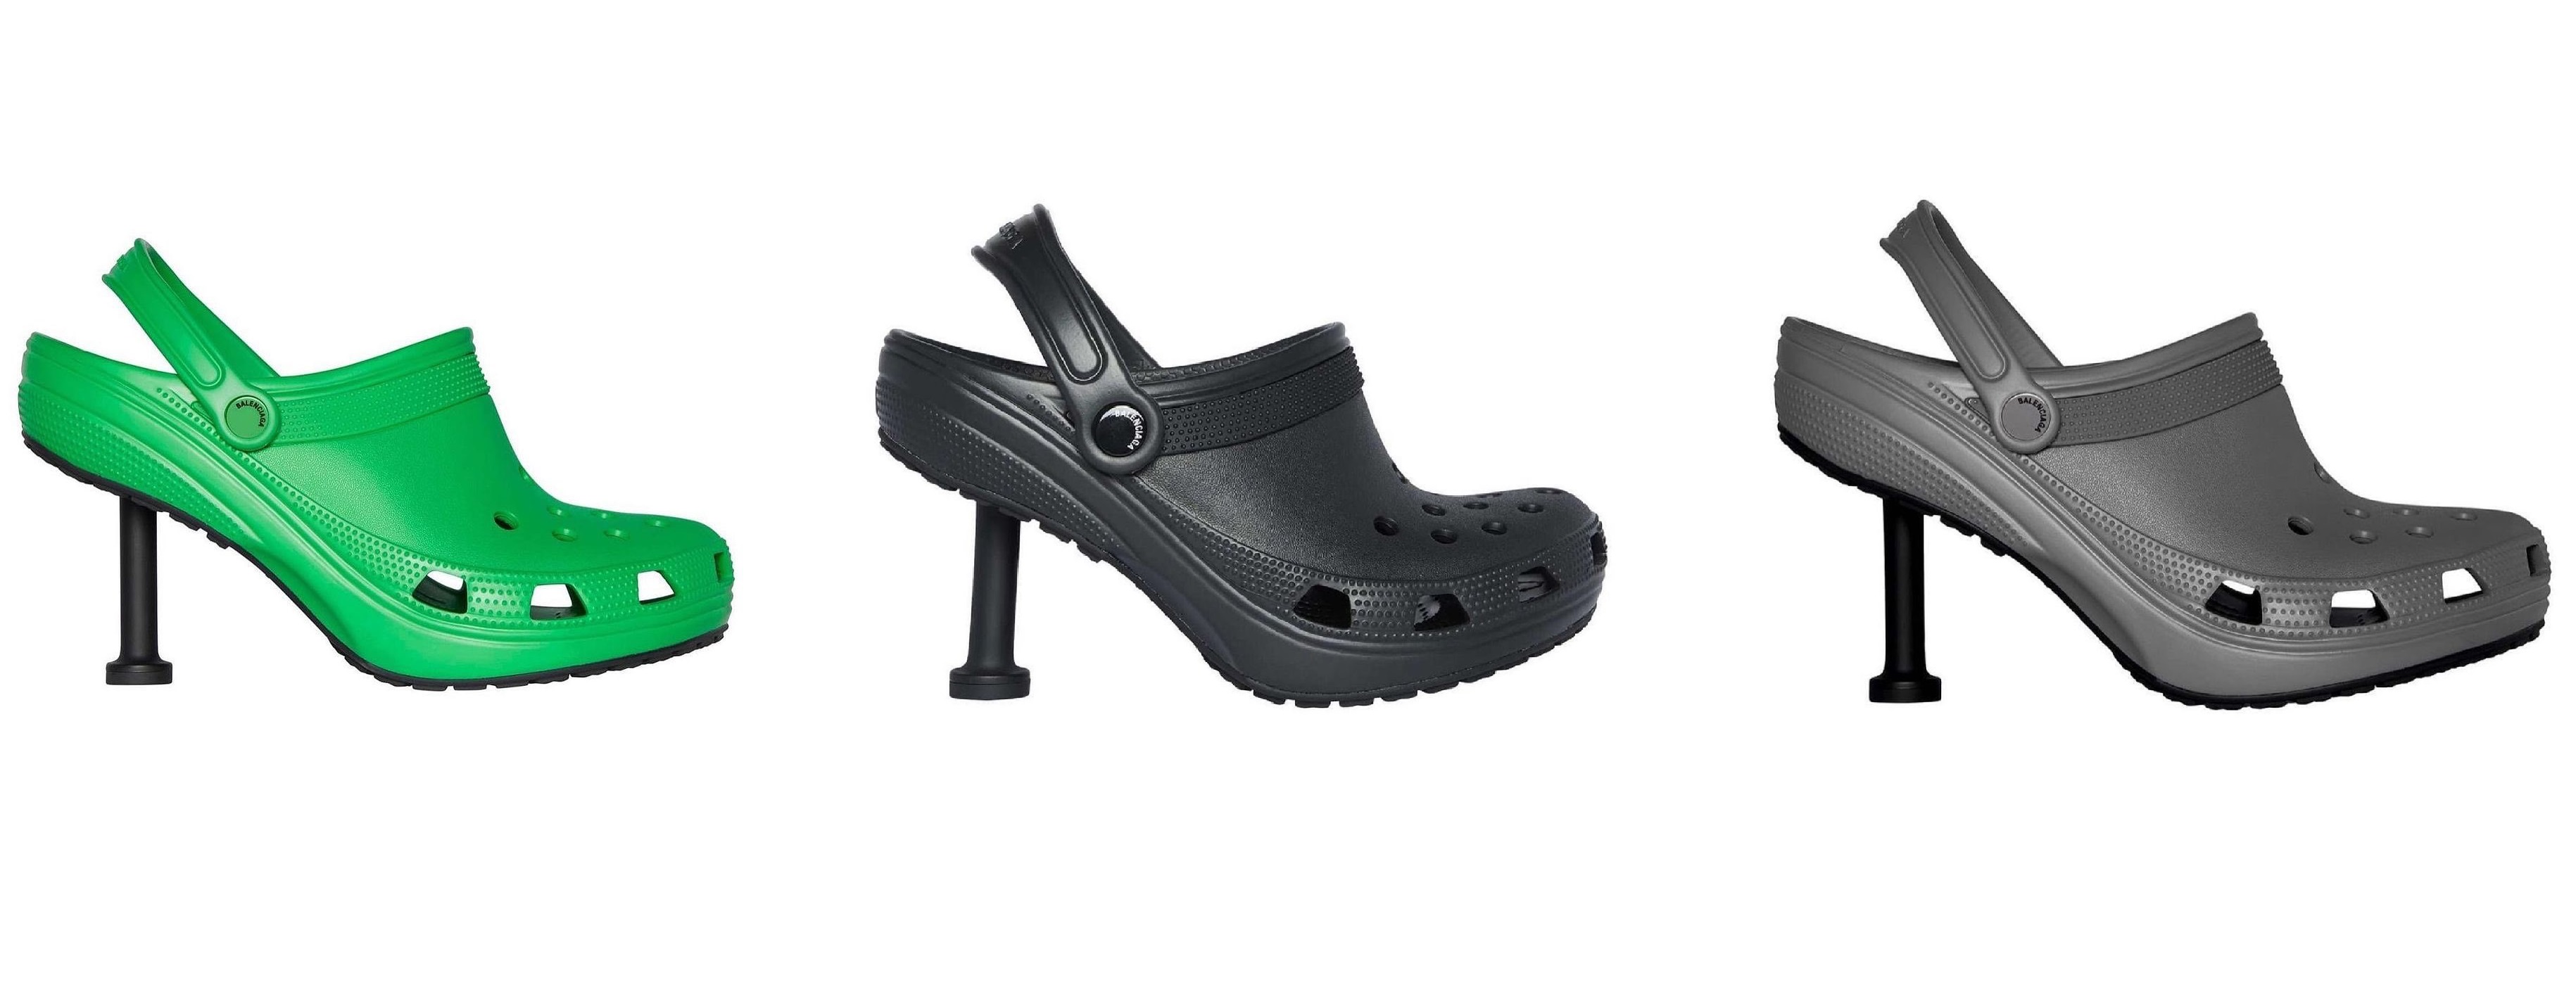 В 2021 году Balenciaga в коллаборации с производителем обуви Crocs выпустил резиновые сабо на шпильке 